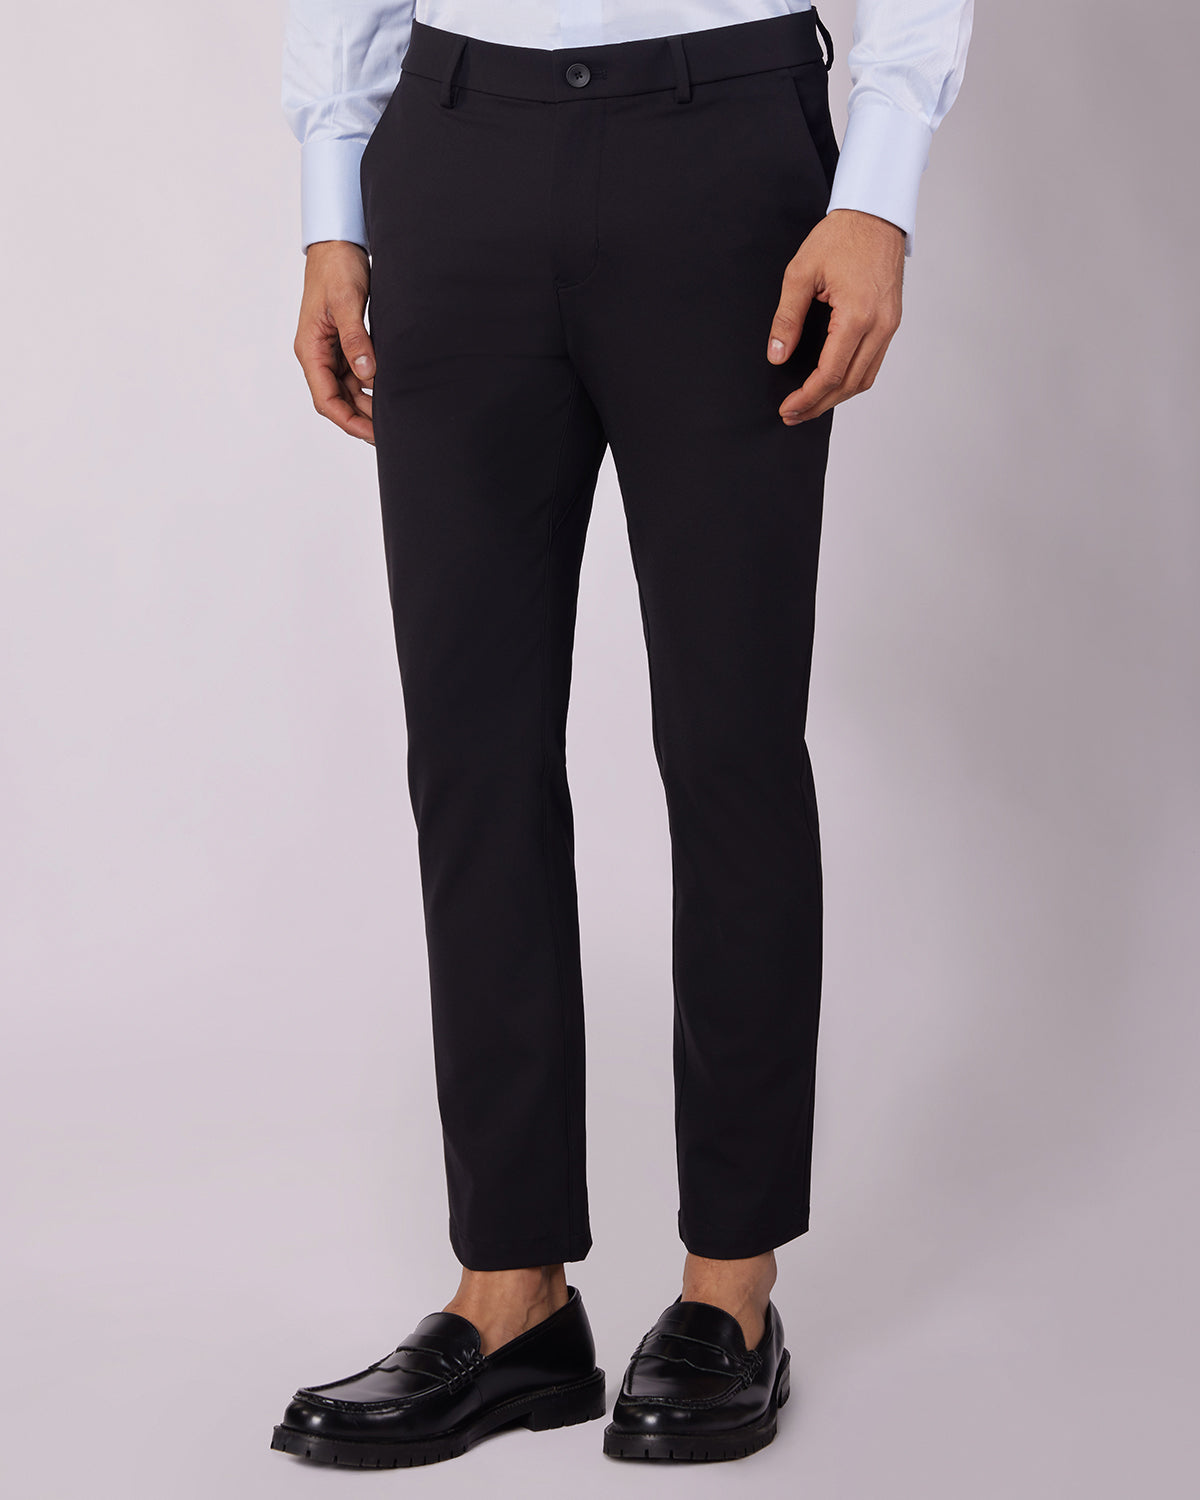 Men's Adjustable Kalahari Cargo Pants - Olive - Boerboel Wear